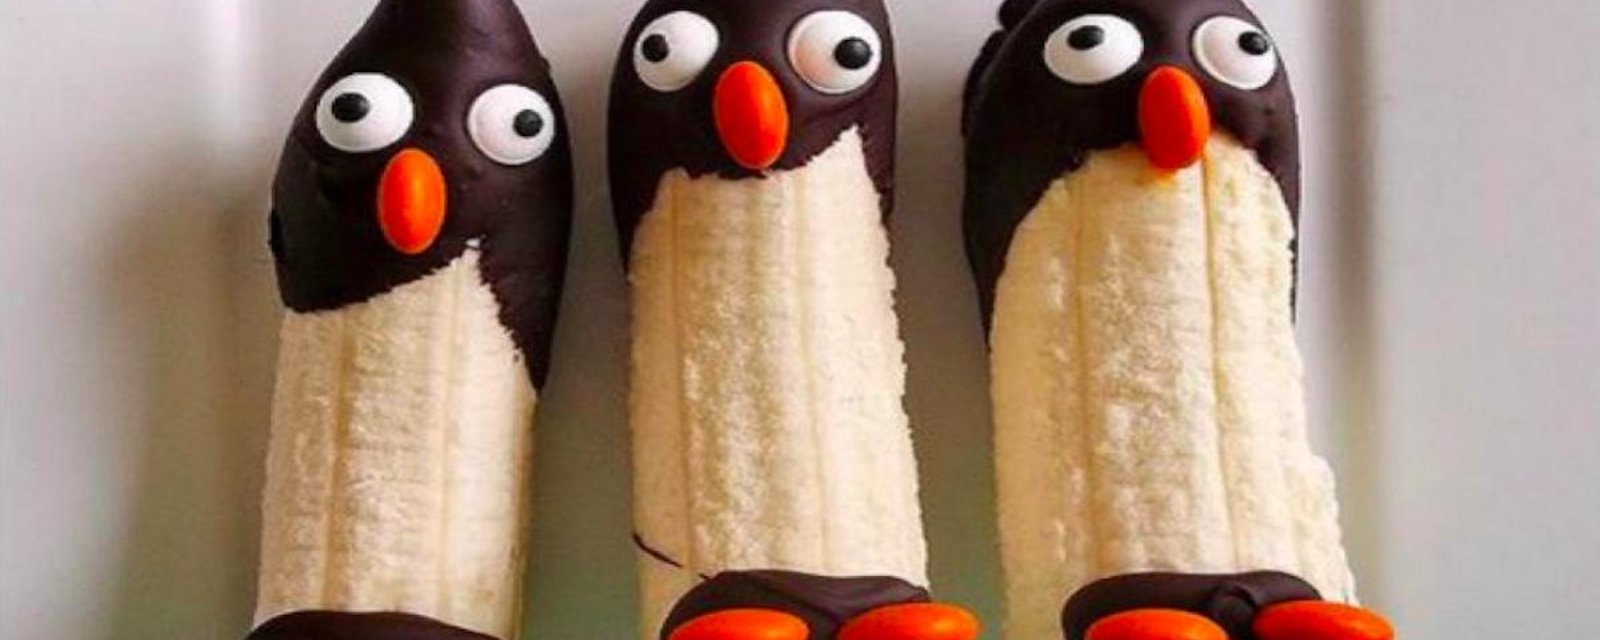 Transformez vos bananes en pingouins chocolatés inspirés du film Madagascar